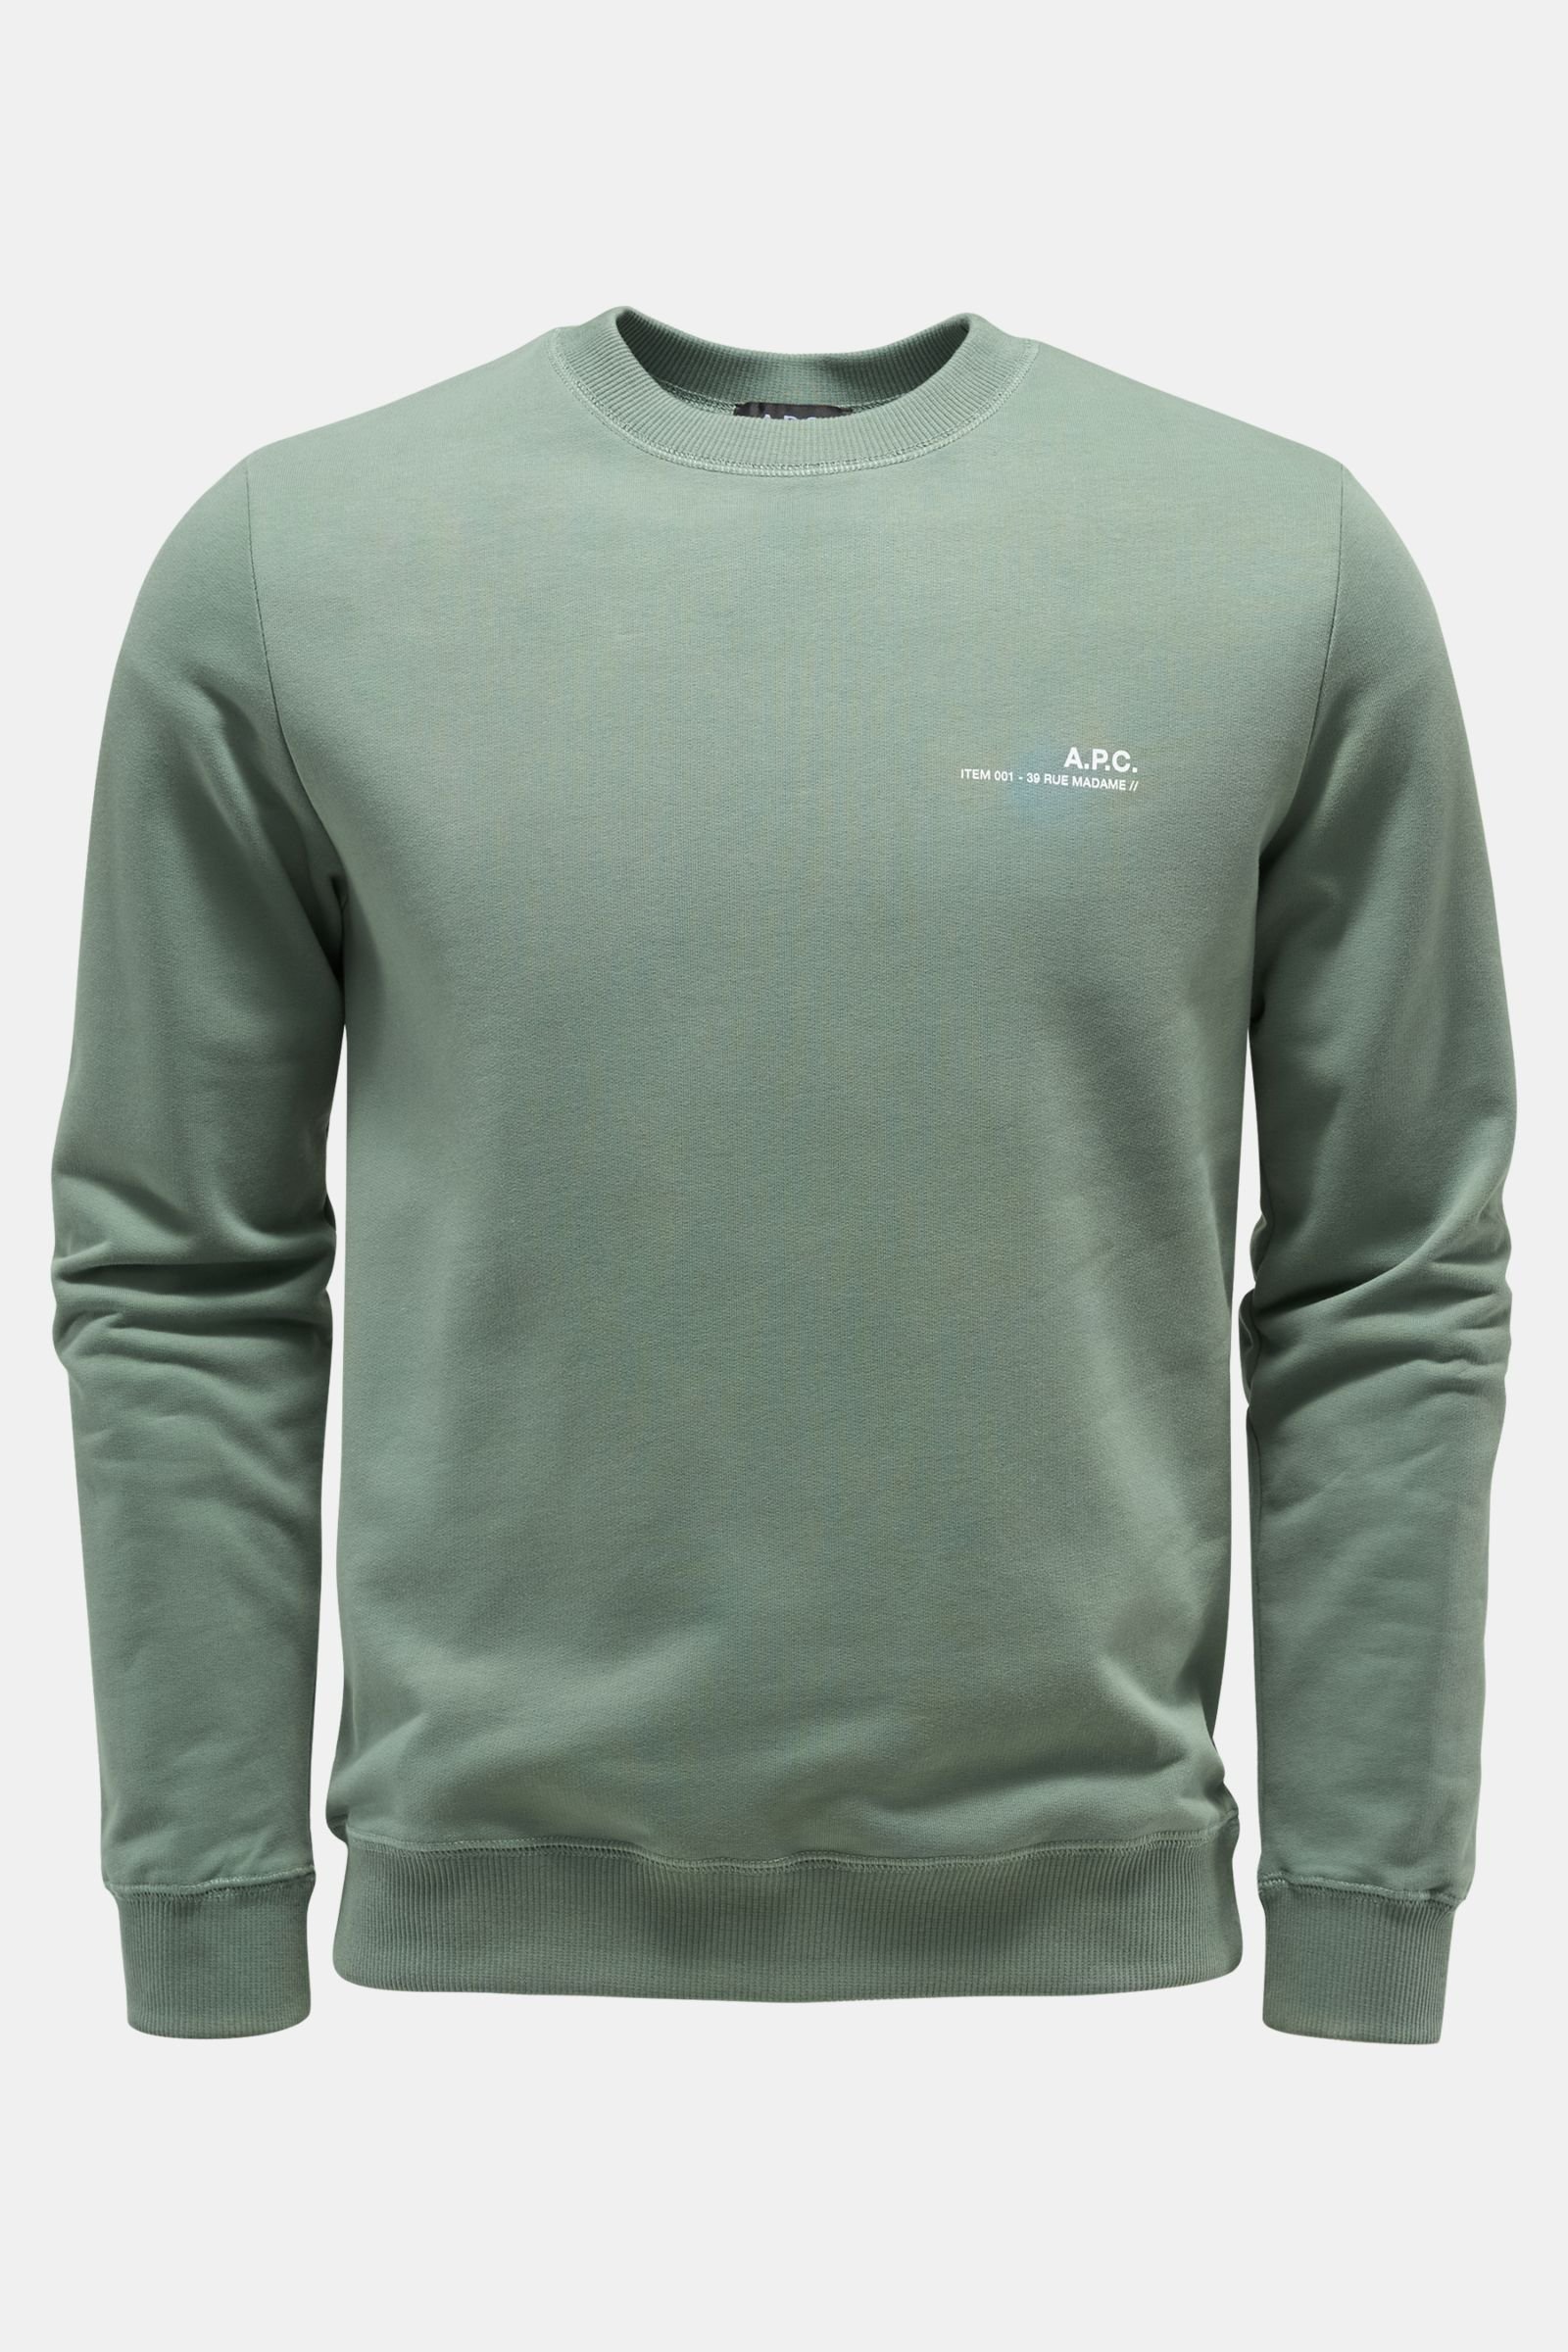 Rundhals-Sweatshirt 'Item' graugrün